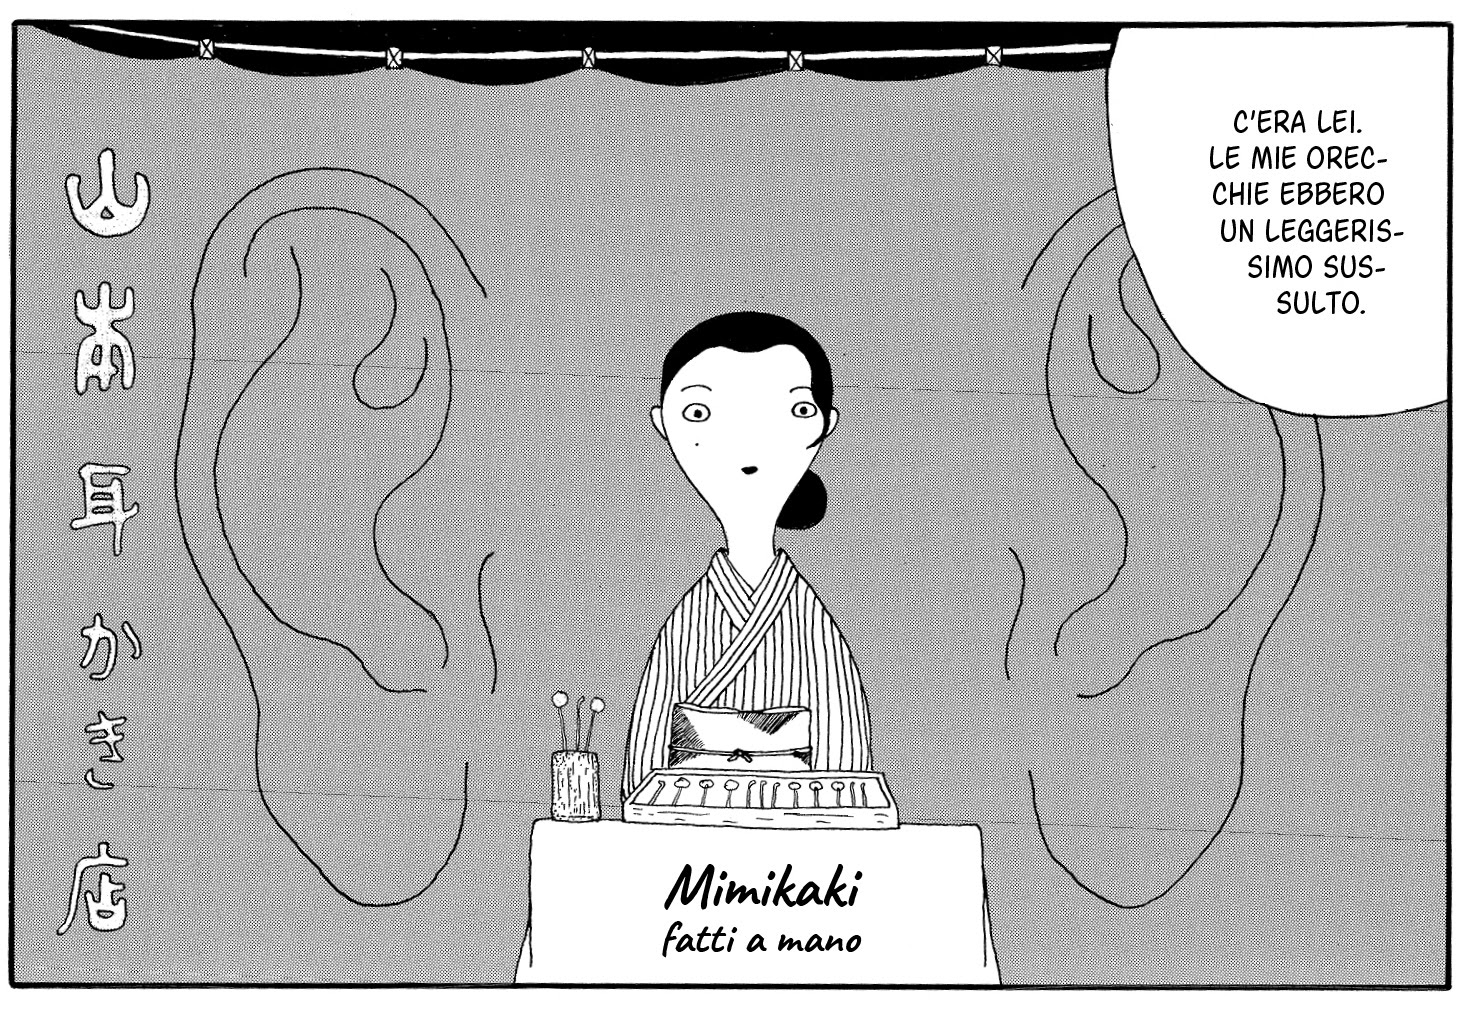 mimikaki - un piacere per le orecchie